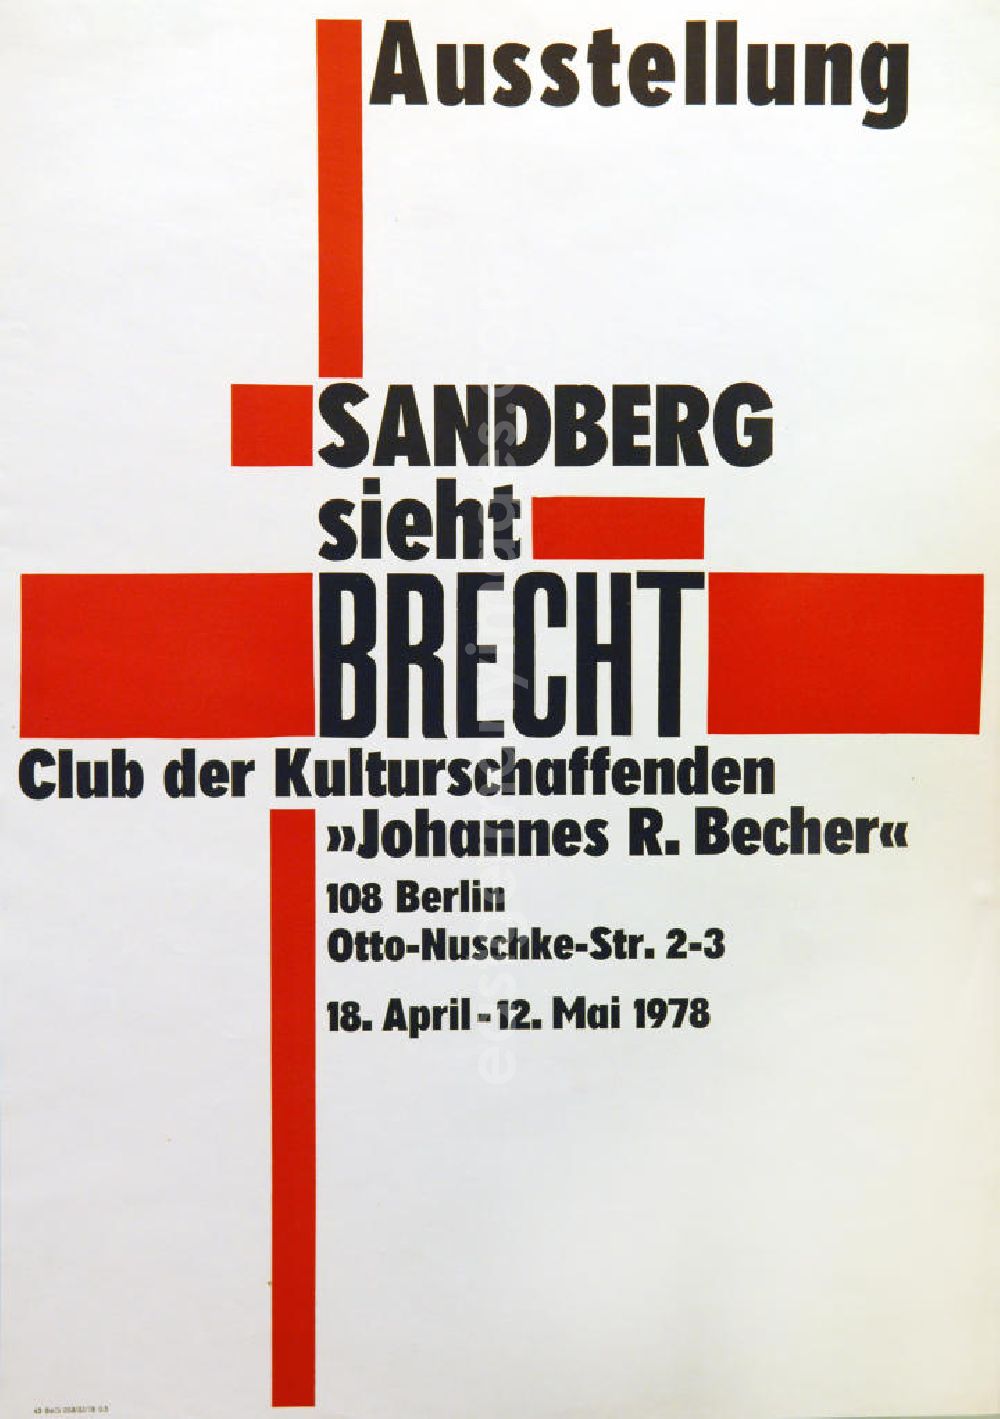 GDR image archive: Berlin - Plakat der Ausstellung Sandberg sieht Brecht über Herbert Sandberg vom 18.04.-12.